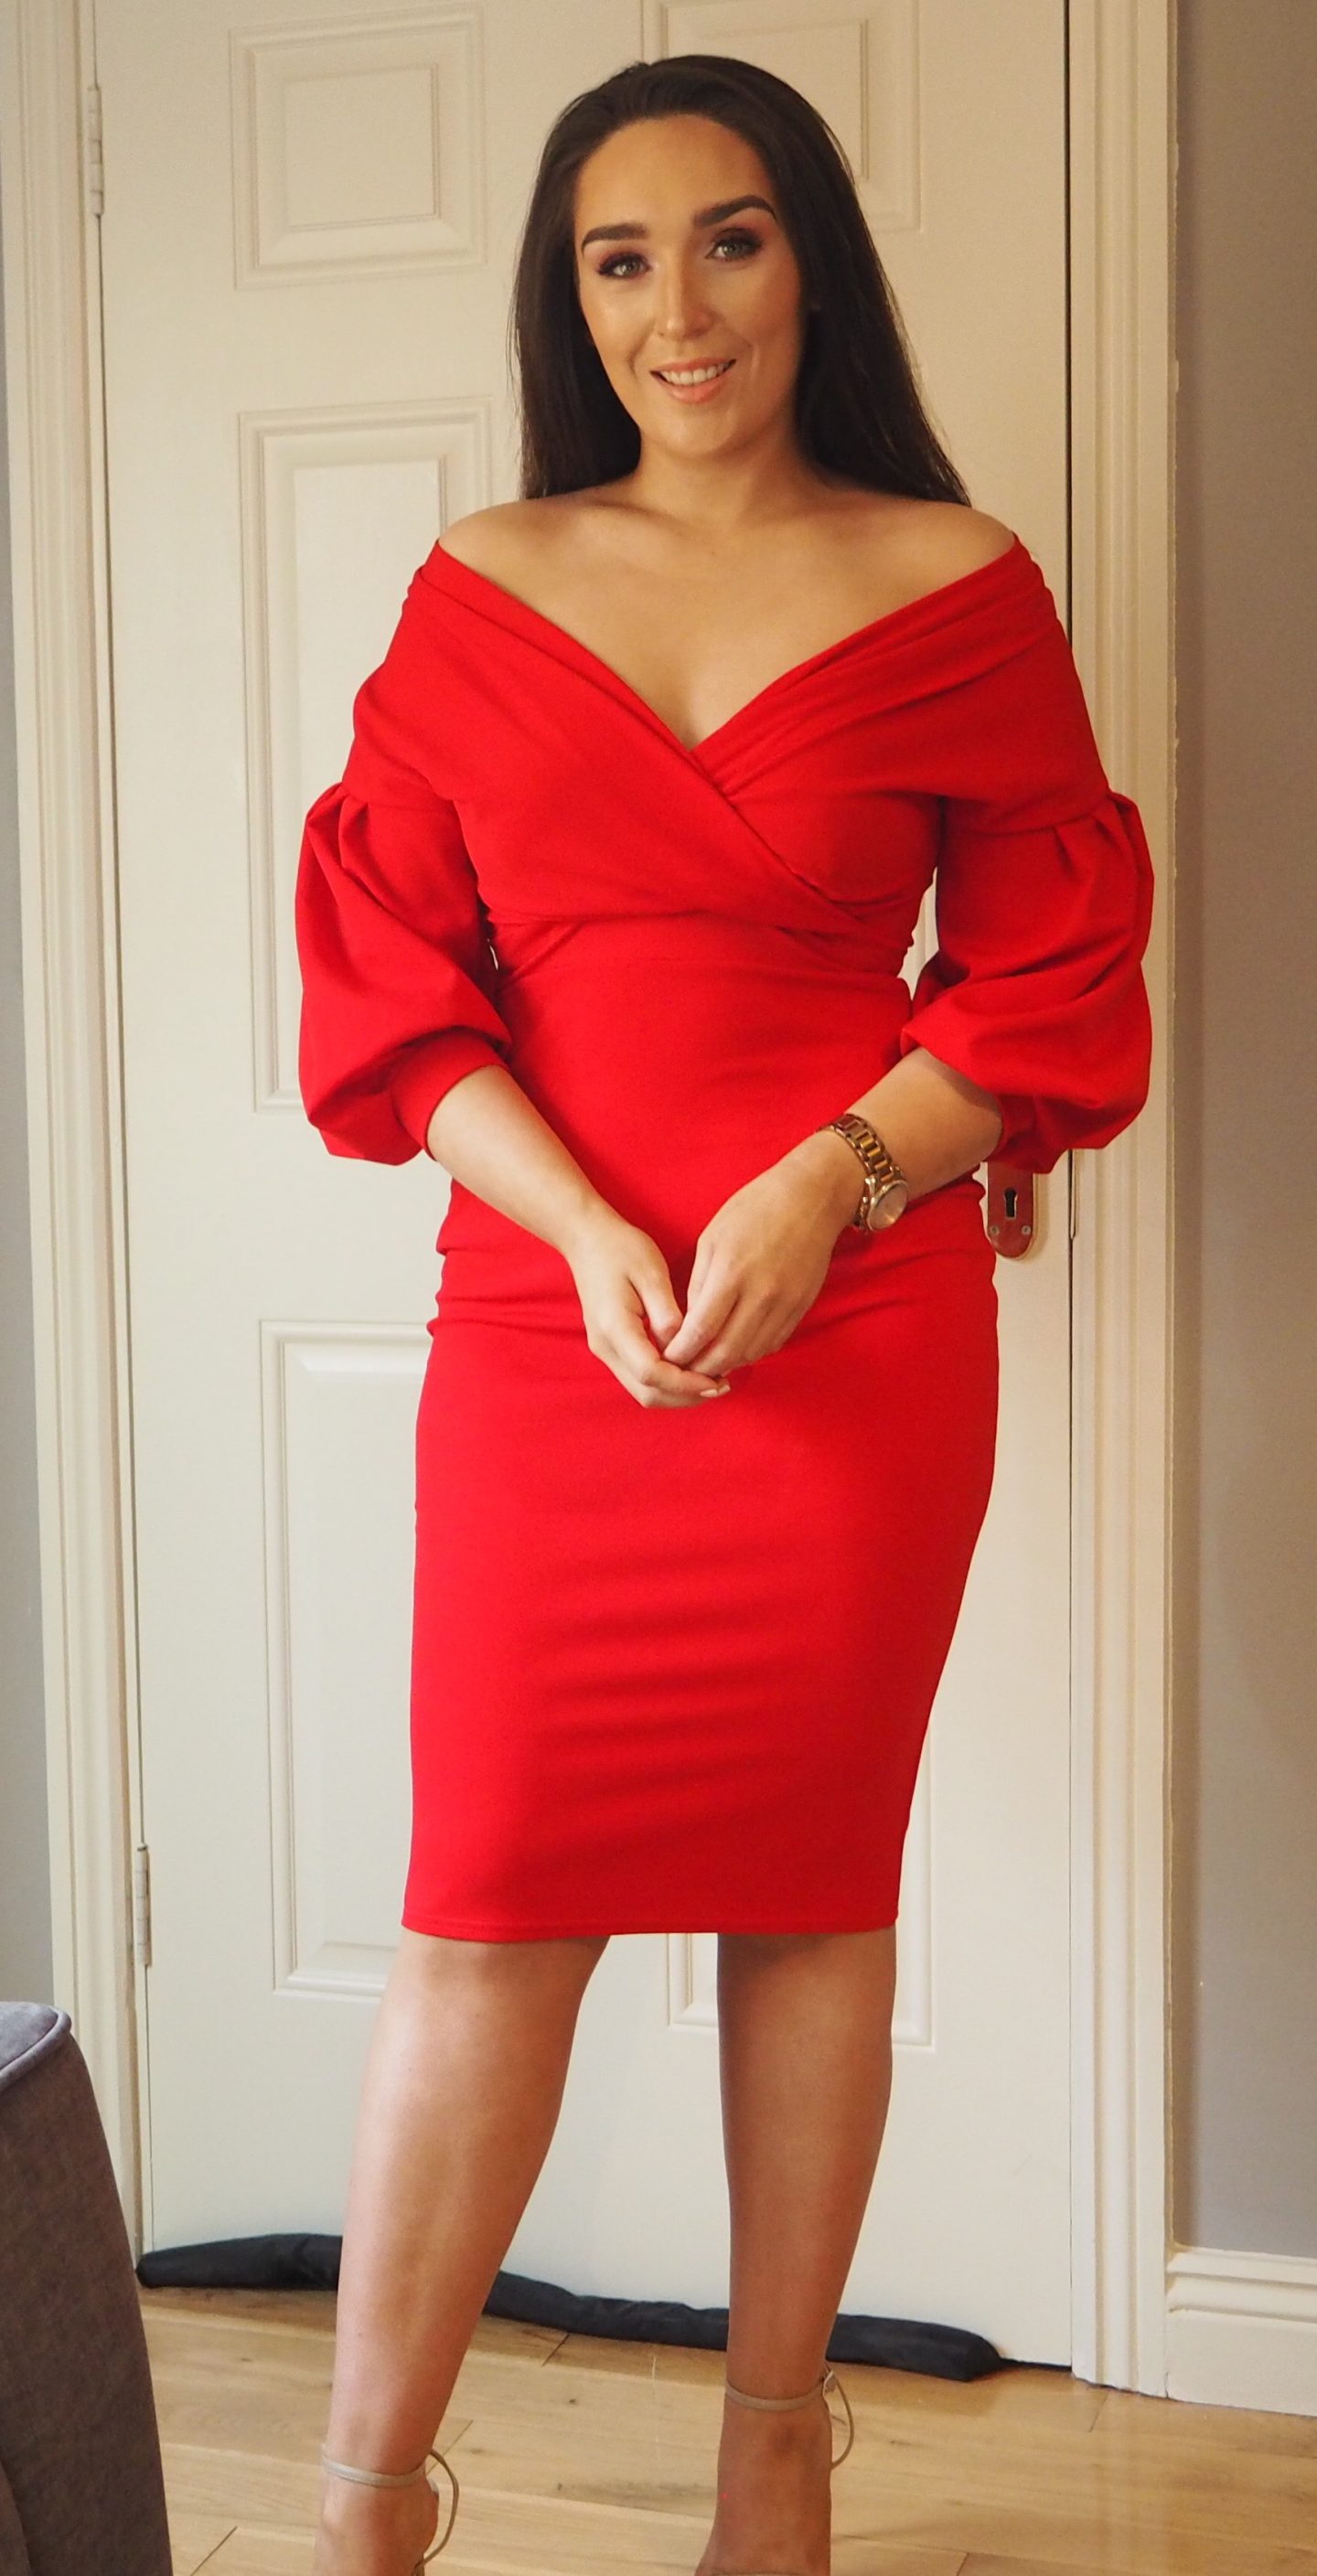 Femme Luxe Bodycon Dress https://femmeluxefinery.co.uk